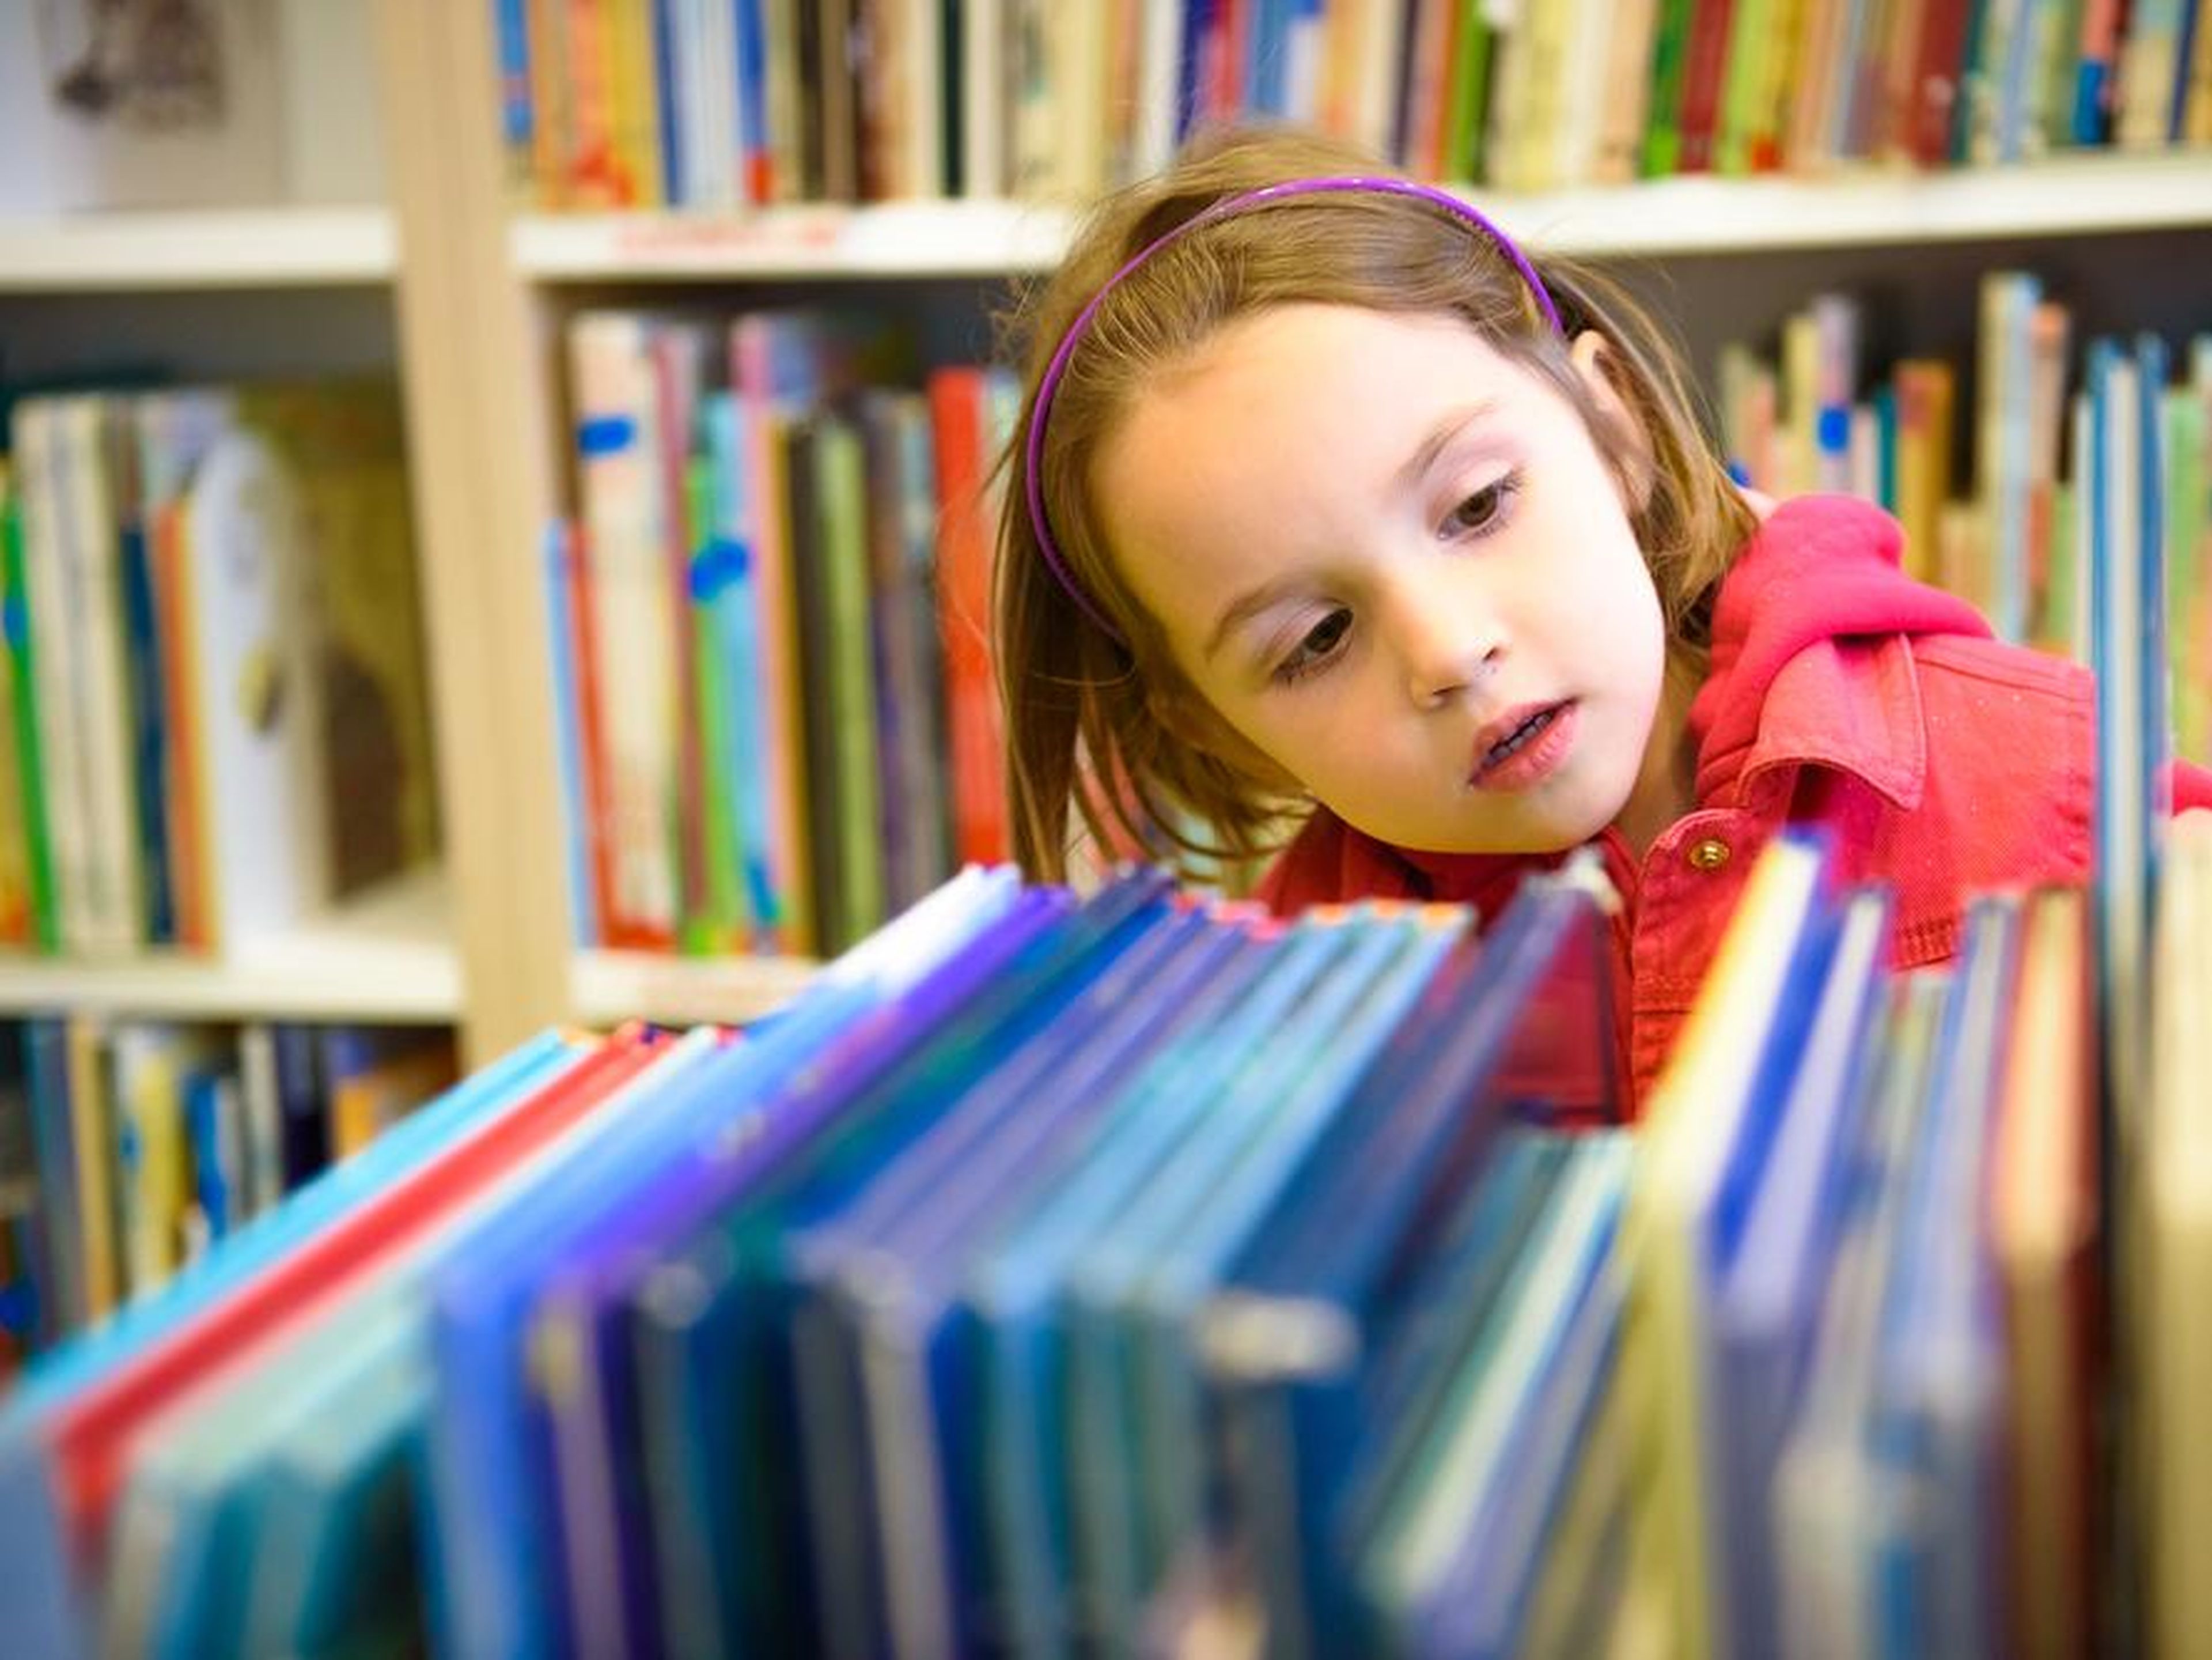 Развитие детской библиотеки. Дети в библиотеке. Читатели в библиотеке. Книги для детей. Библиотека для малышей.